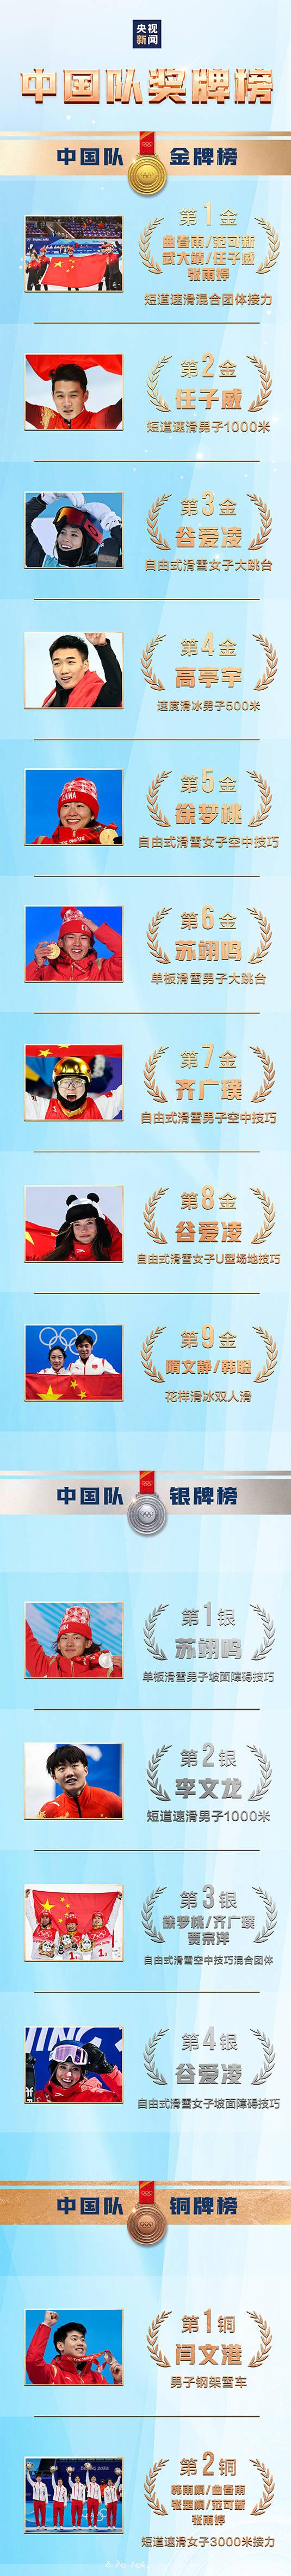 祝賀！中國隊位列獎牌榜第三位 金牌數、獎牌數均創歷史最好成績 